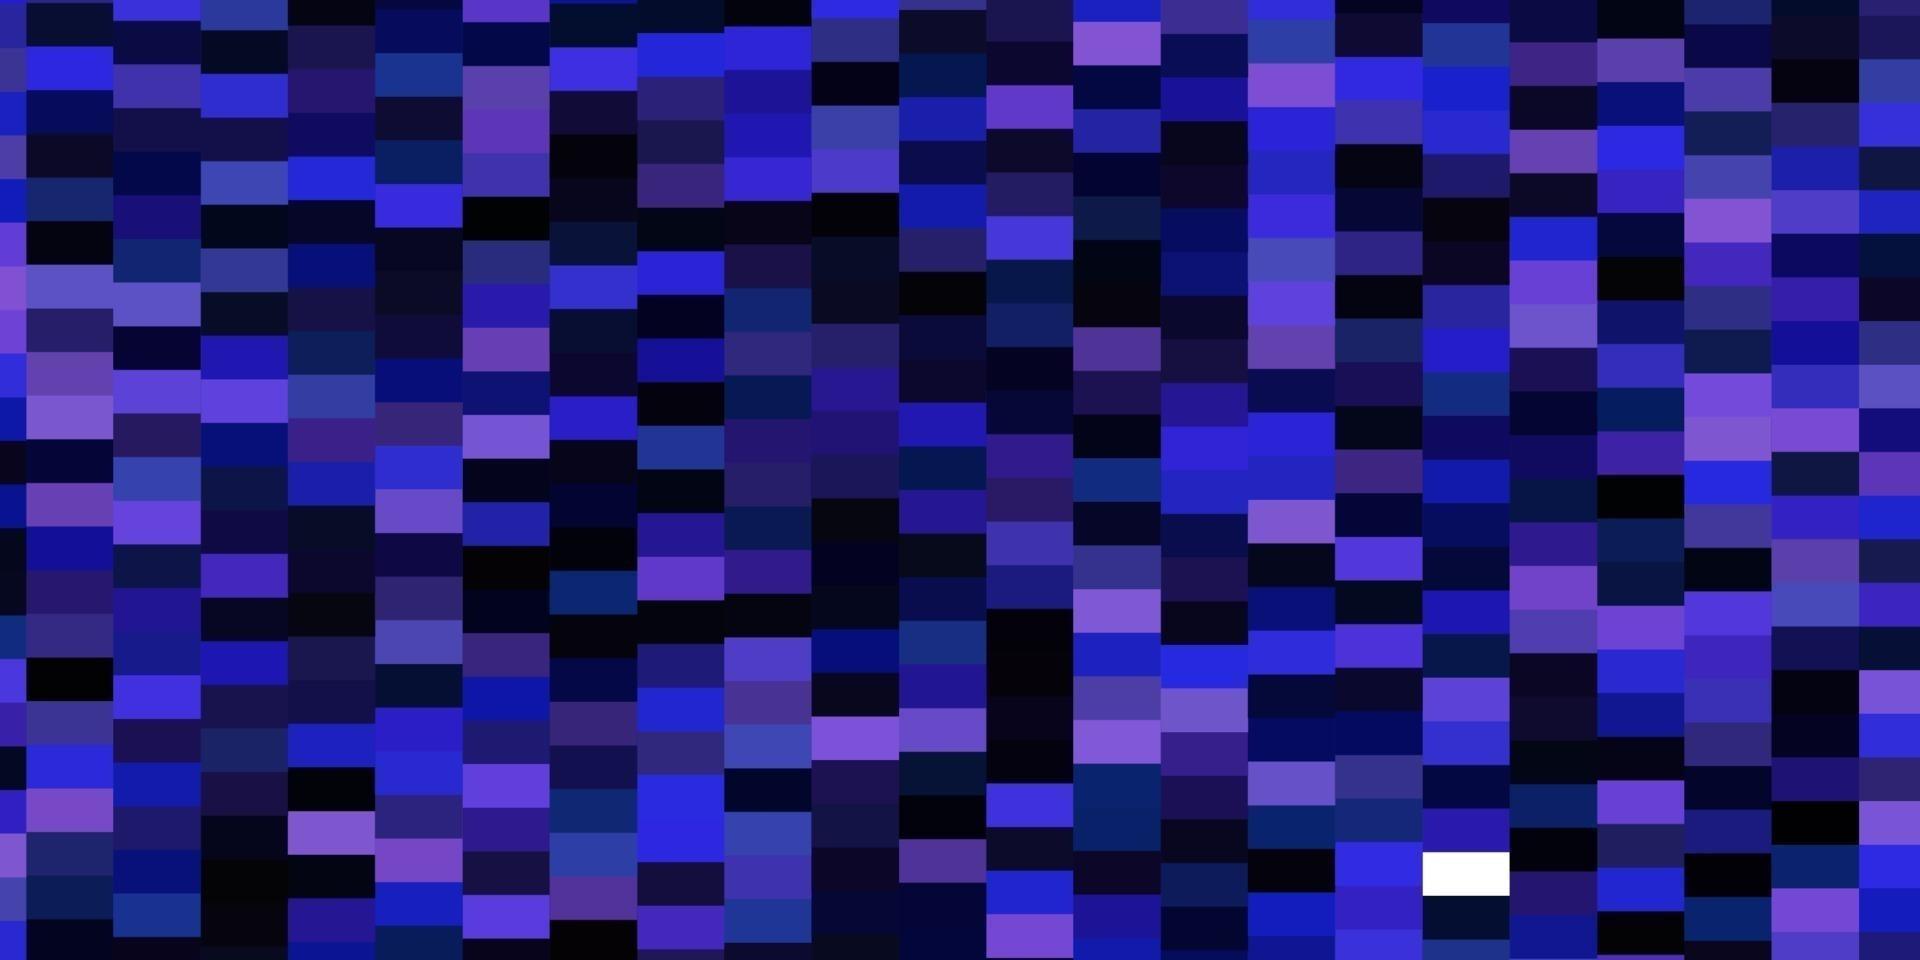 mörkrosa, blå vektorlayout med linjer, rektanglar. vektor